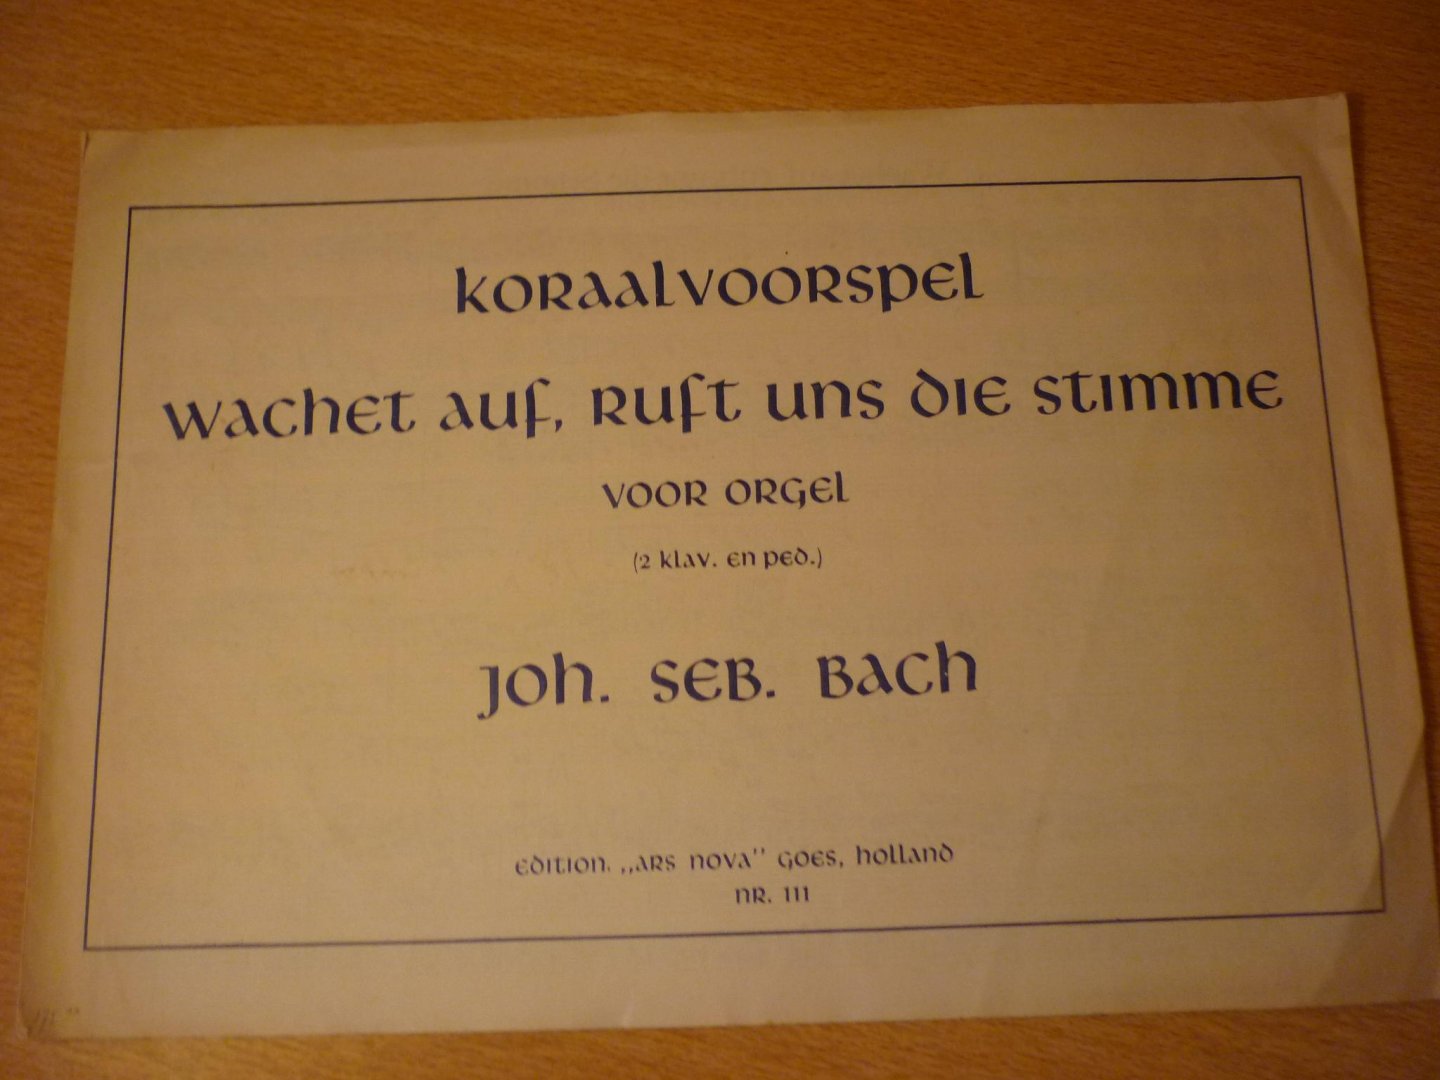 Bach J.S. (1685 – 1750) - Koraalvoorspel: 'Wachet auf, ruft uns die stimme'; voor orgel